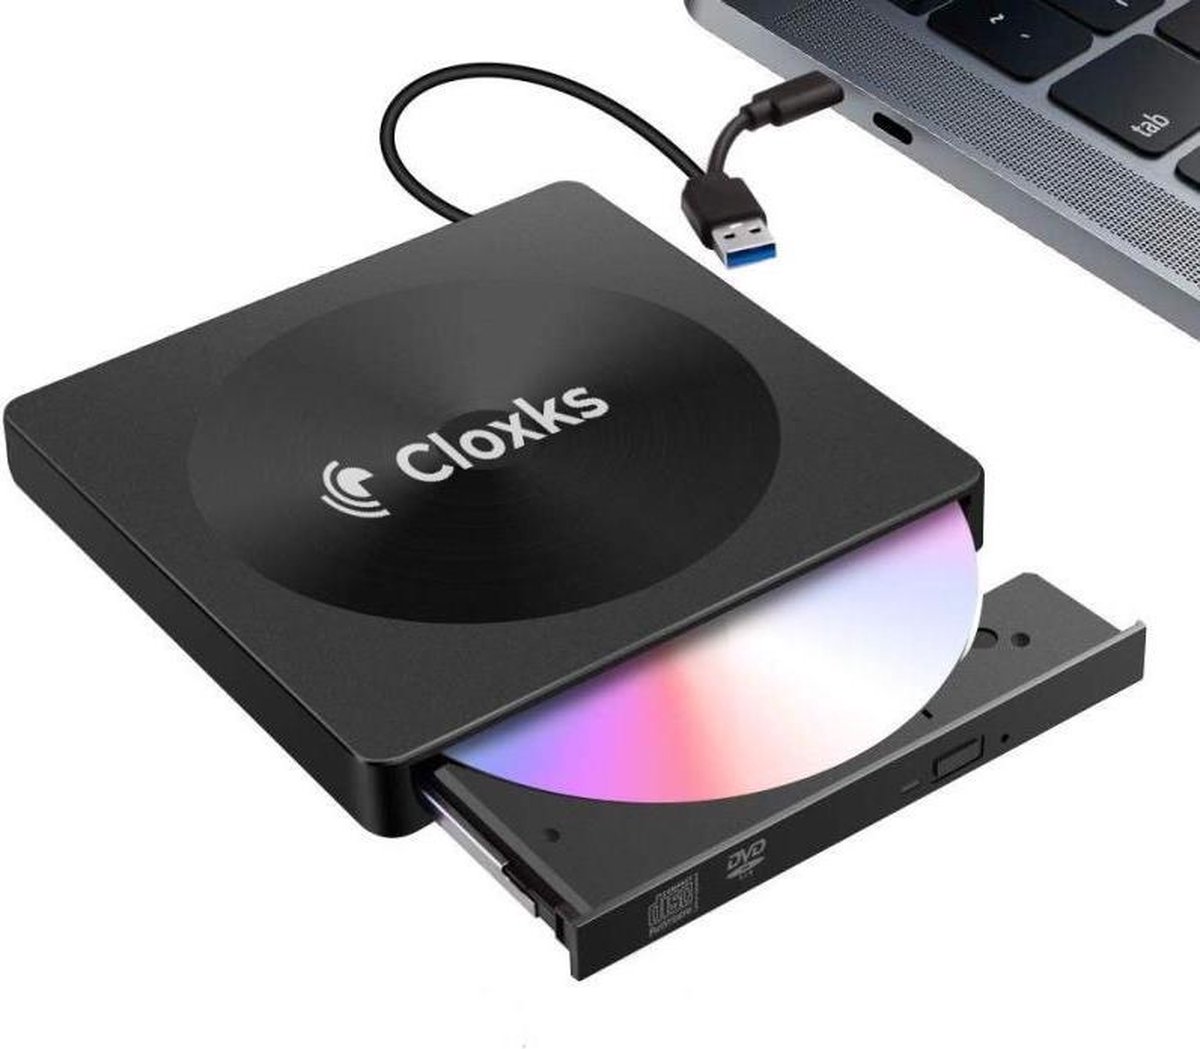 URGOODS® externe Lecteur DVD / CD et Brander pour ordinateur portable Wit -  DVD